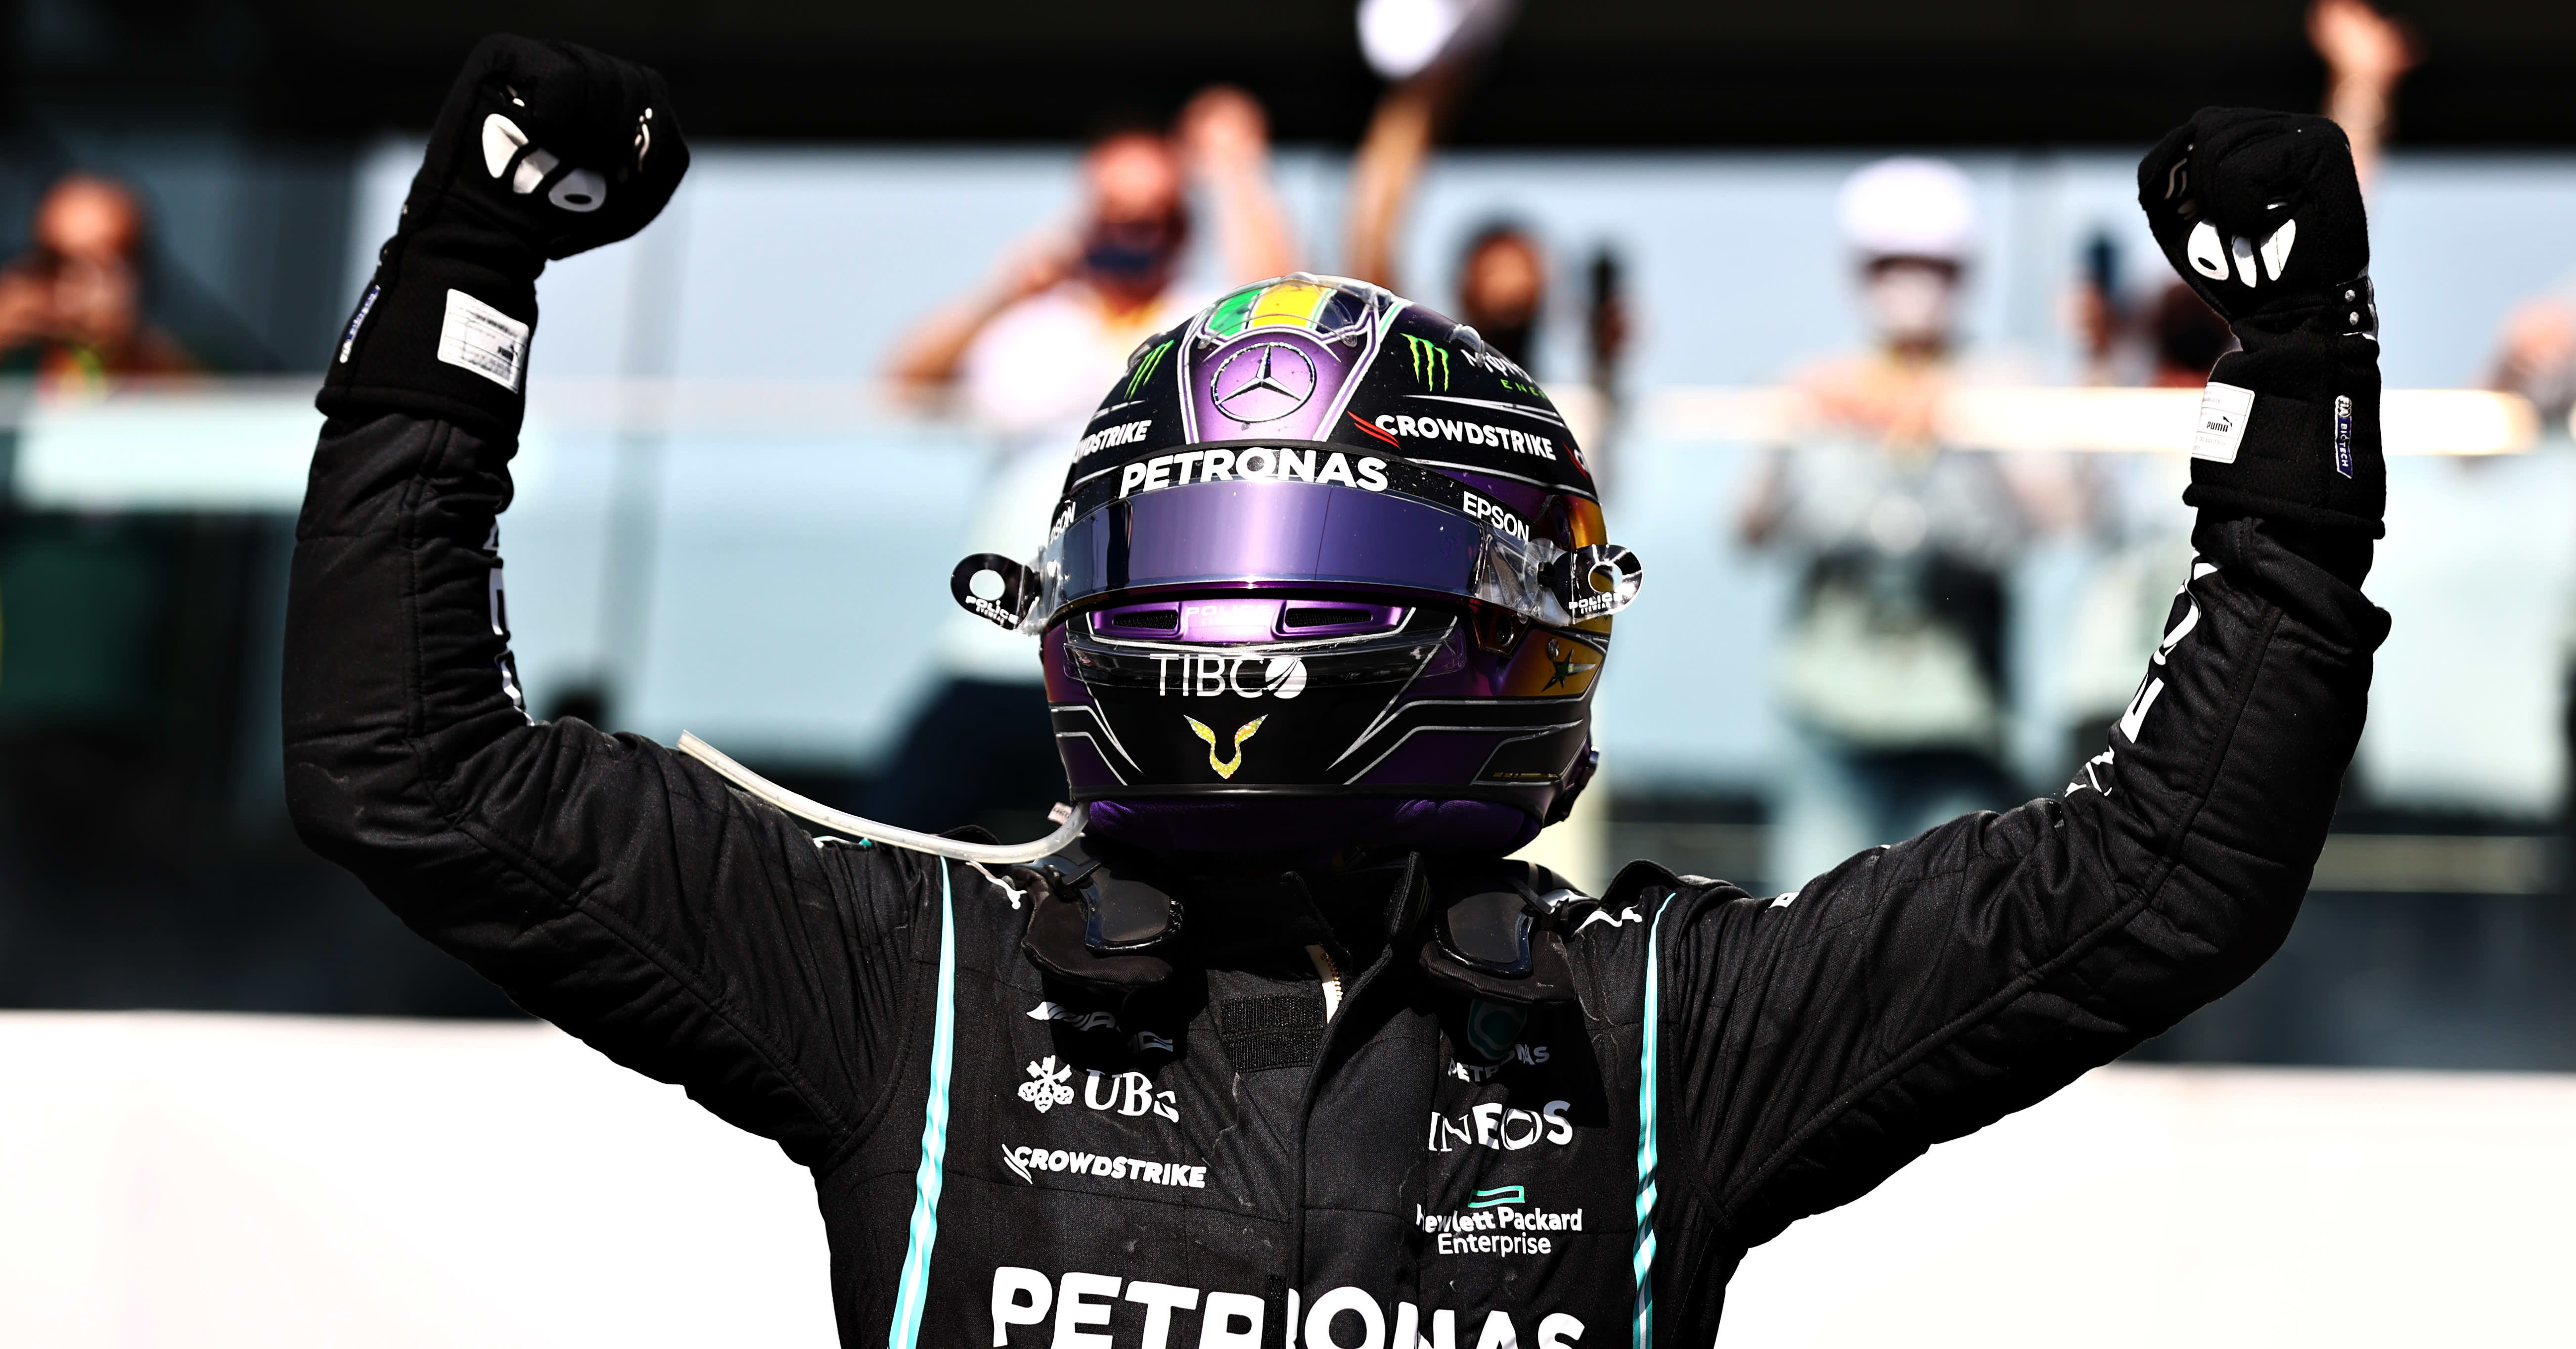 Lewis Hamiltonilta uskomaton nousu voittoon – Max Verstappenin liike puhutti kaksintaistelussa